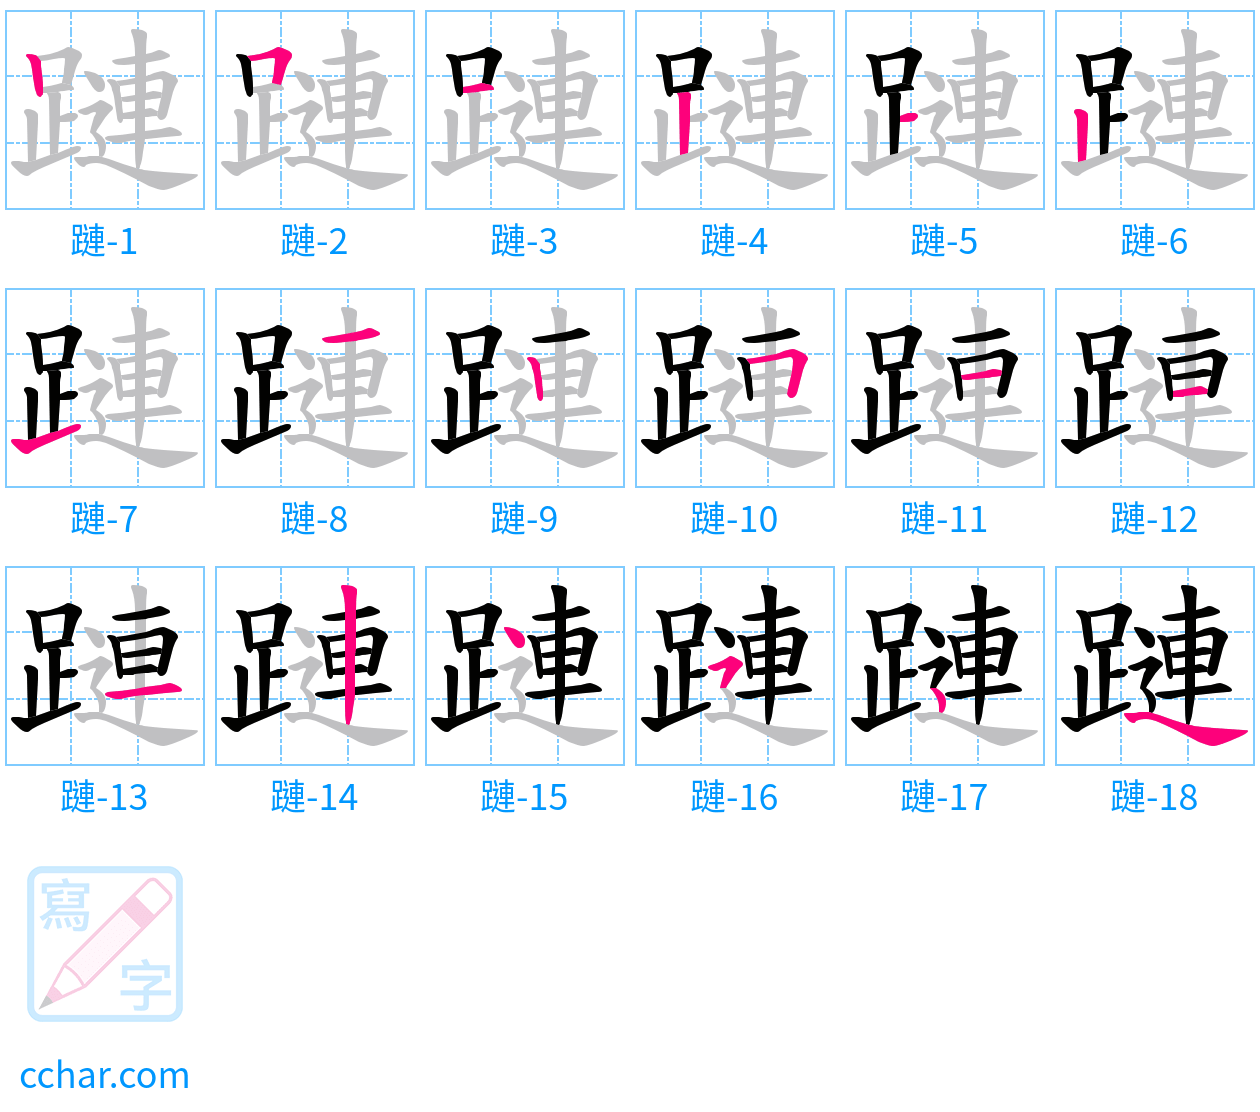 蹥 stroke order step-by-step diagram